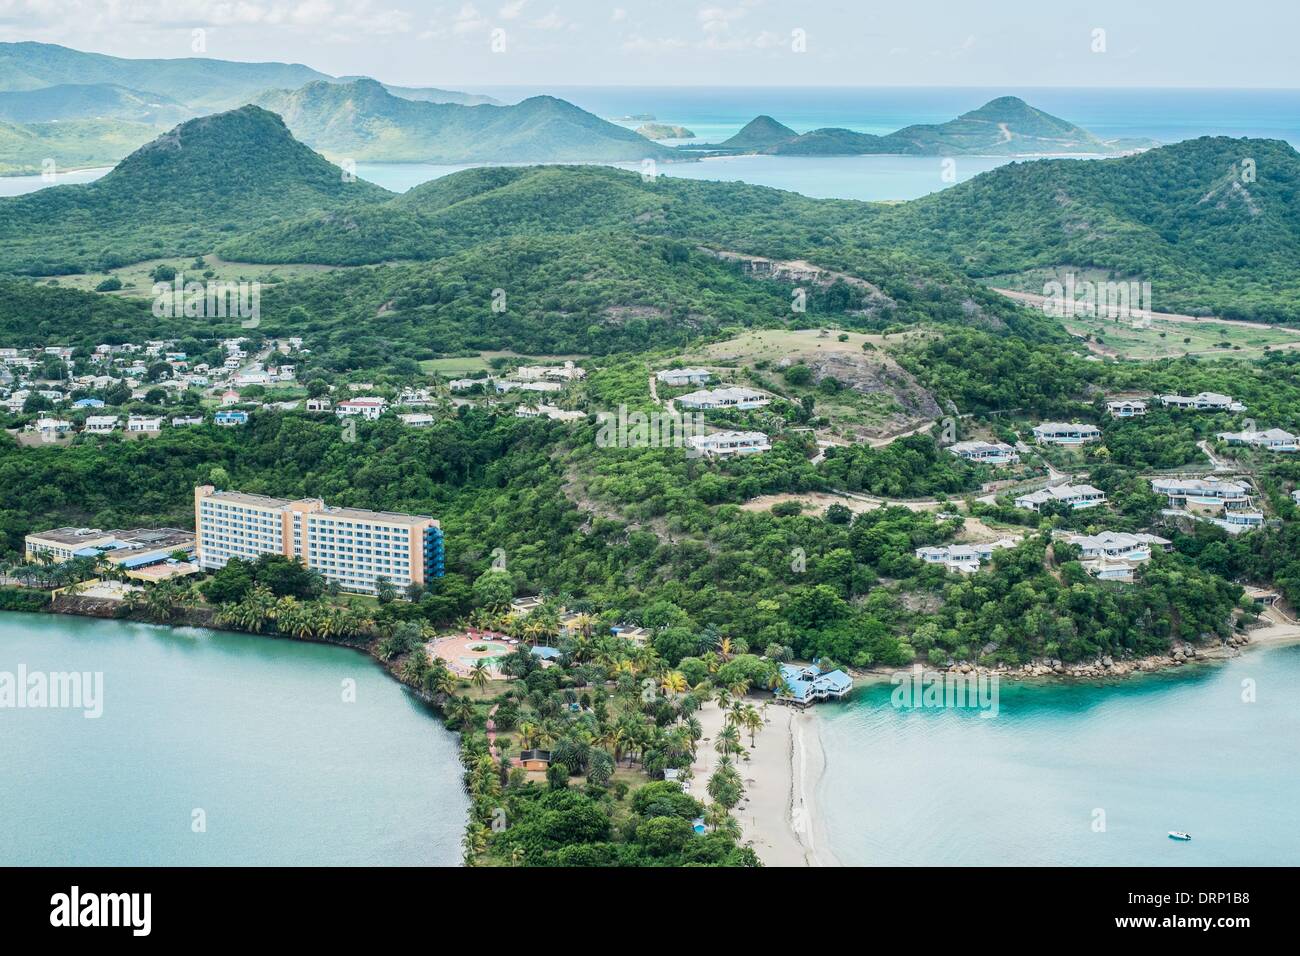 Erernen Blick auf die Insel Antigua mit Hotels, Strand und Wald. -Oktober 2013. Stockfoto